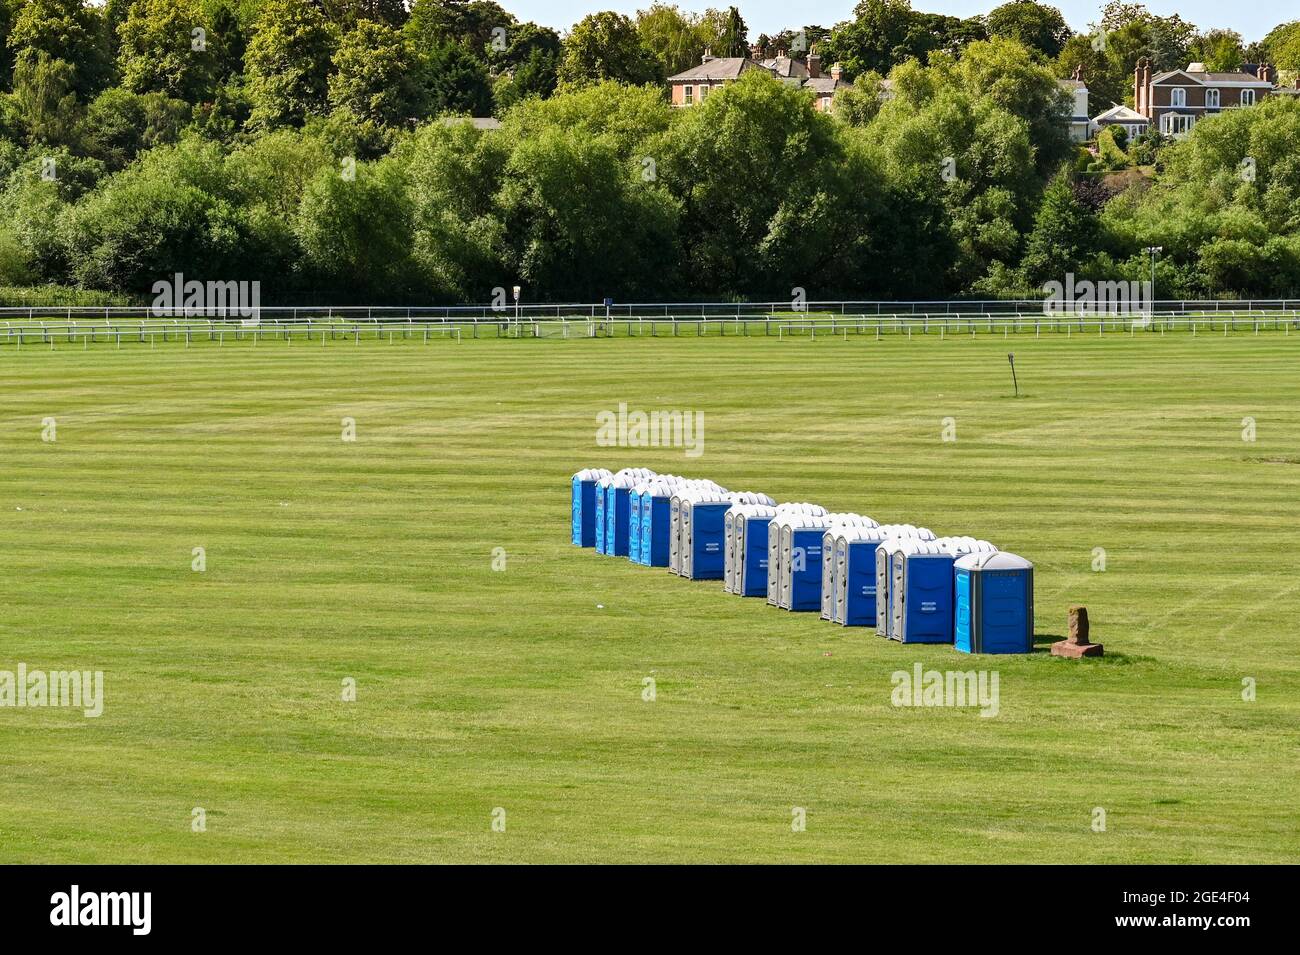 Chester, Cheshire, England - Juli 2021: Reihe tragbarer Toiletten auf der Rennbahn zur Vorbereitung auf eine Veranstaltung Stockfoto